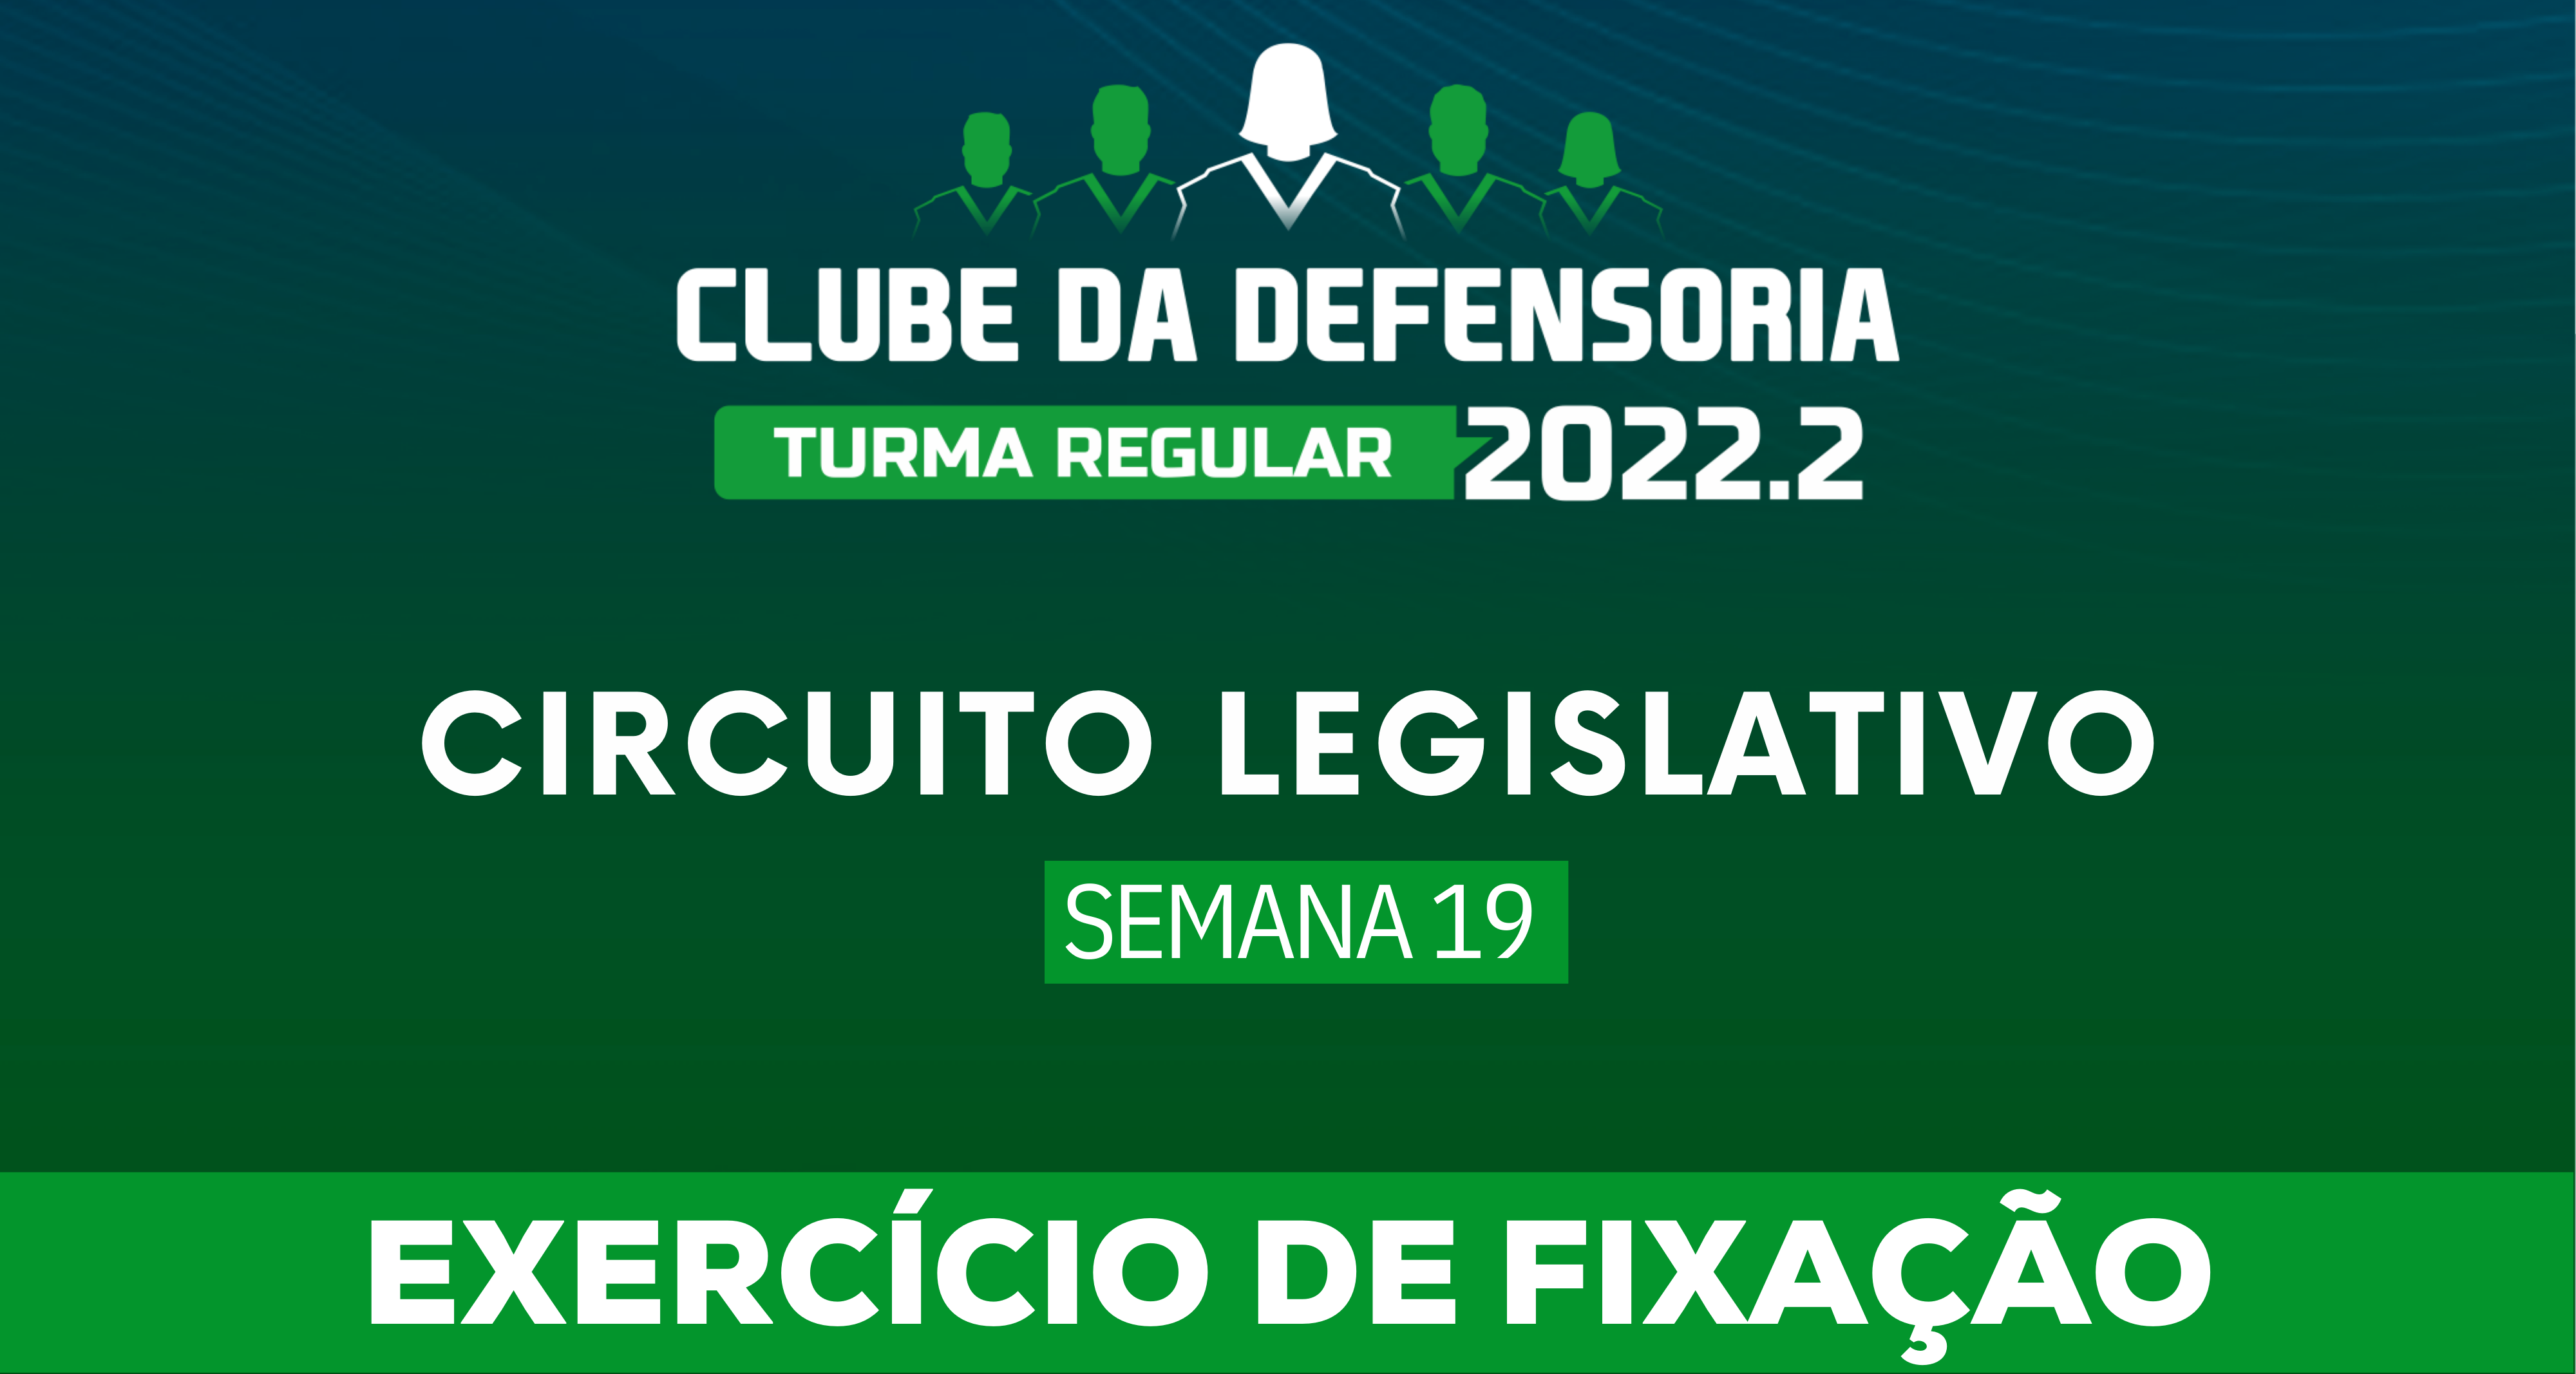 Circuito Legislativo 2022.2 (Clube da Defensoria - Semana 19)